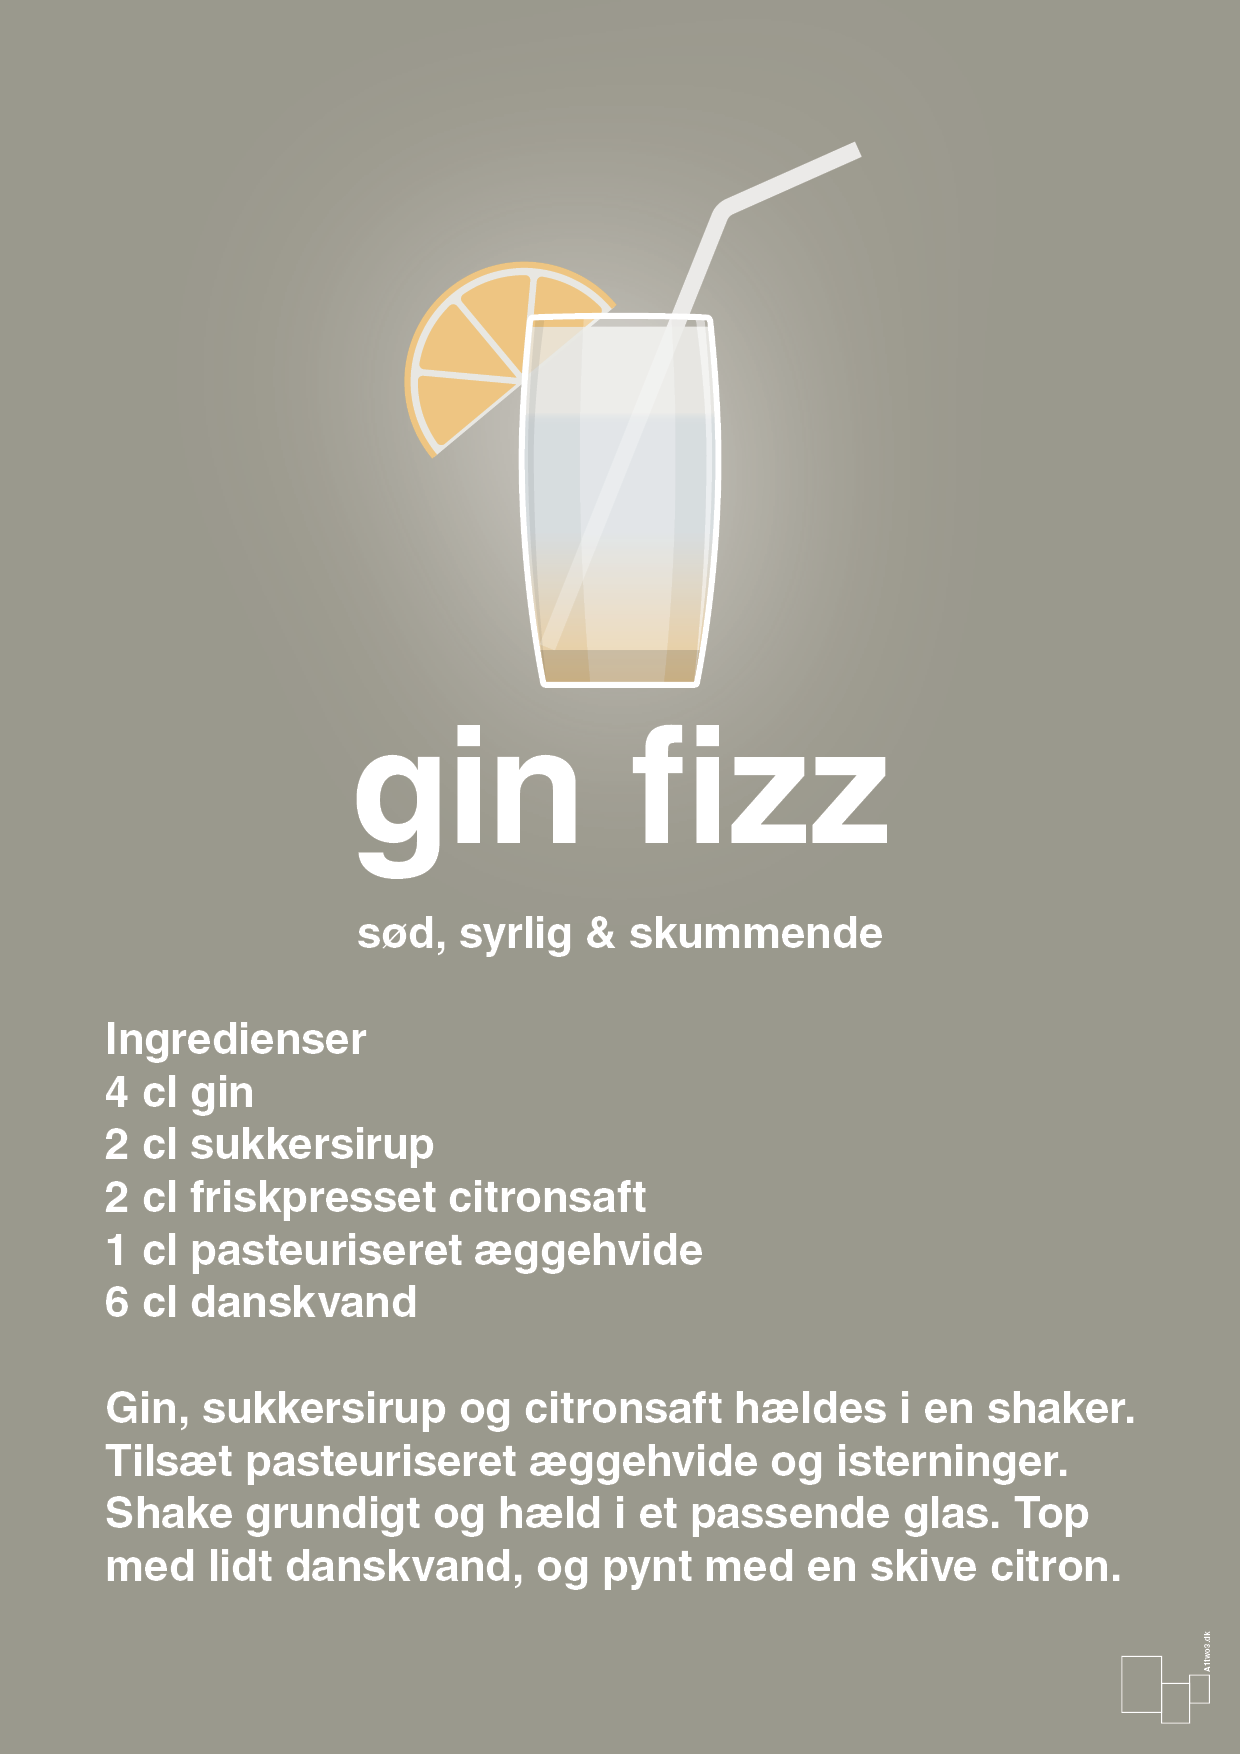 plakat: gin fizz